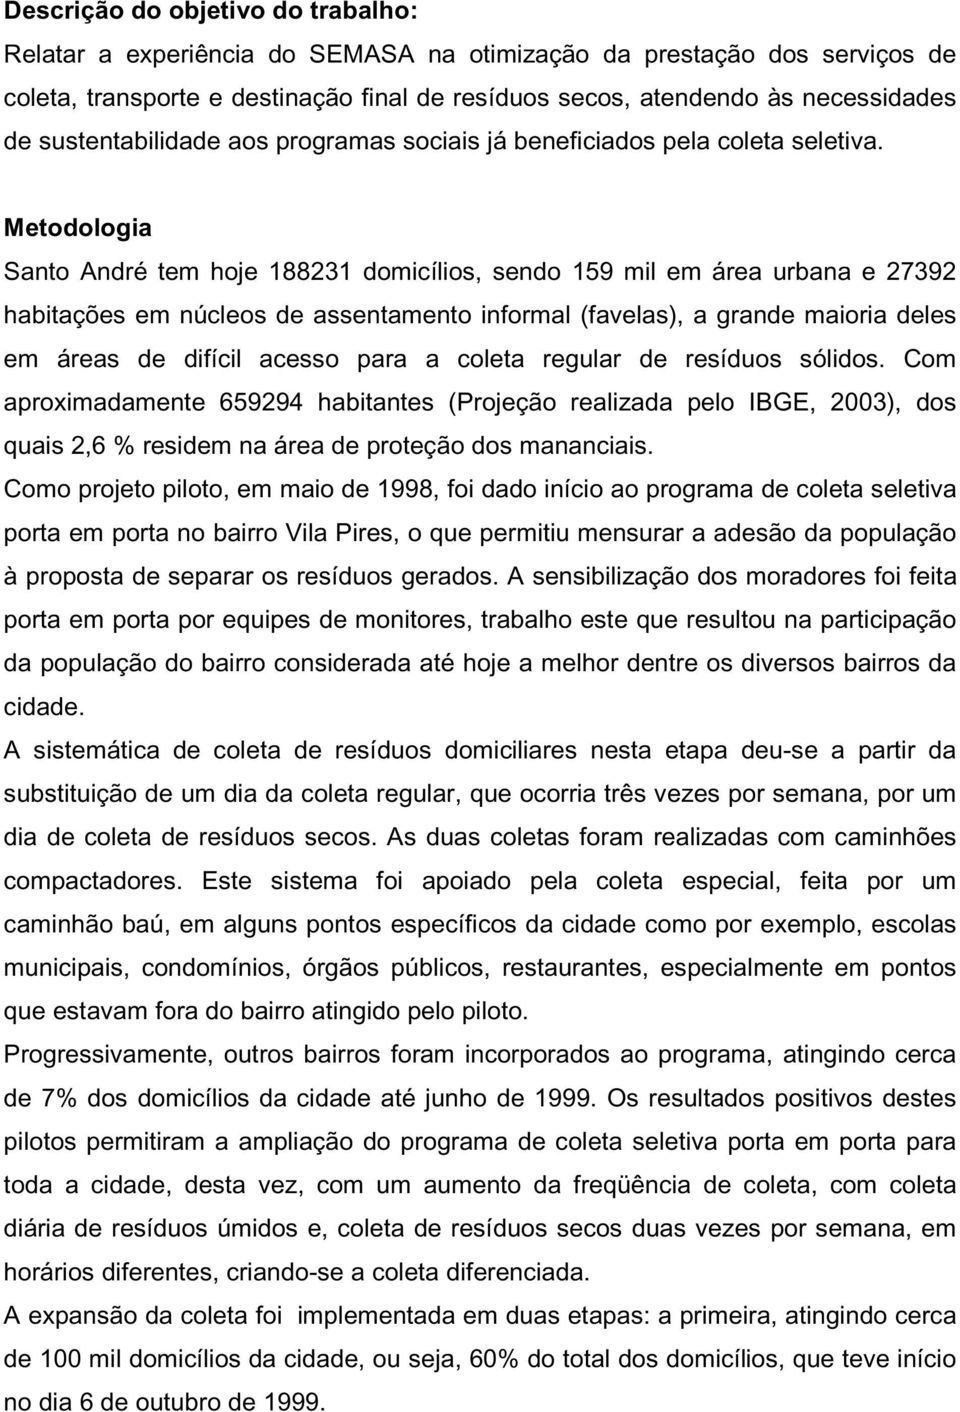 Metodologia Santo André tem hoje 188231 domicílios, sendo 159 mil em área urbana e 27392 habitações em núcleos de assentamento informal (favelas), a grande maioria deles em áreas de difícil acesso